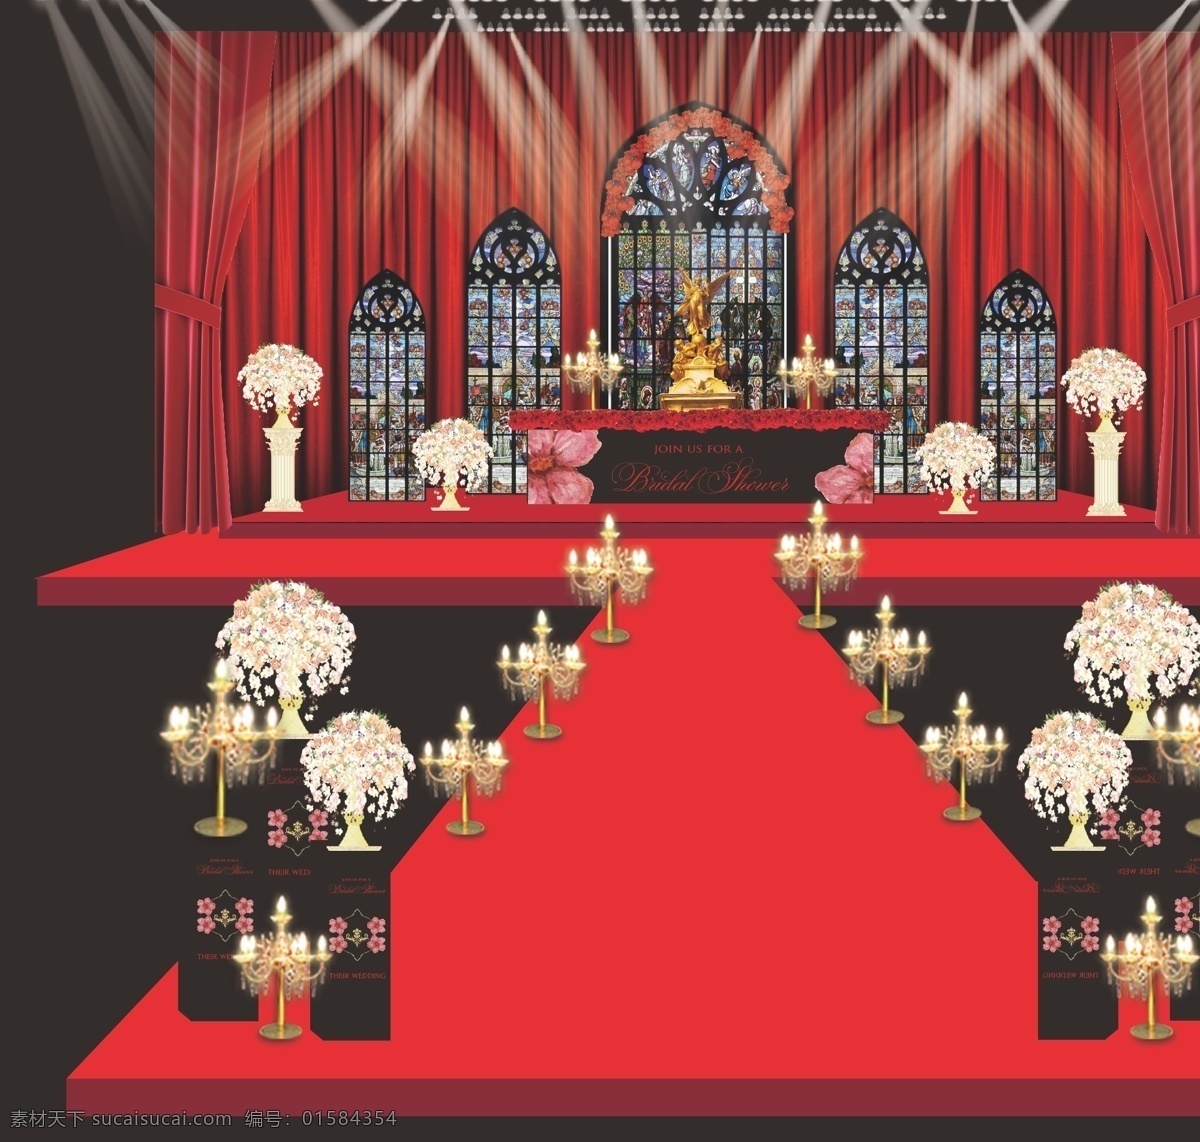 红黑婚礼 杜嘉班纳舞台 红黑婚礼舞台 红 黑 婚礼 效果图 舞台 婚礼效果图 教堂婚礼 水晶灯 红黑教堂 红色